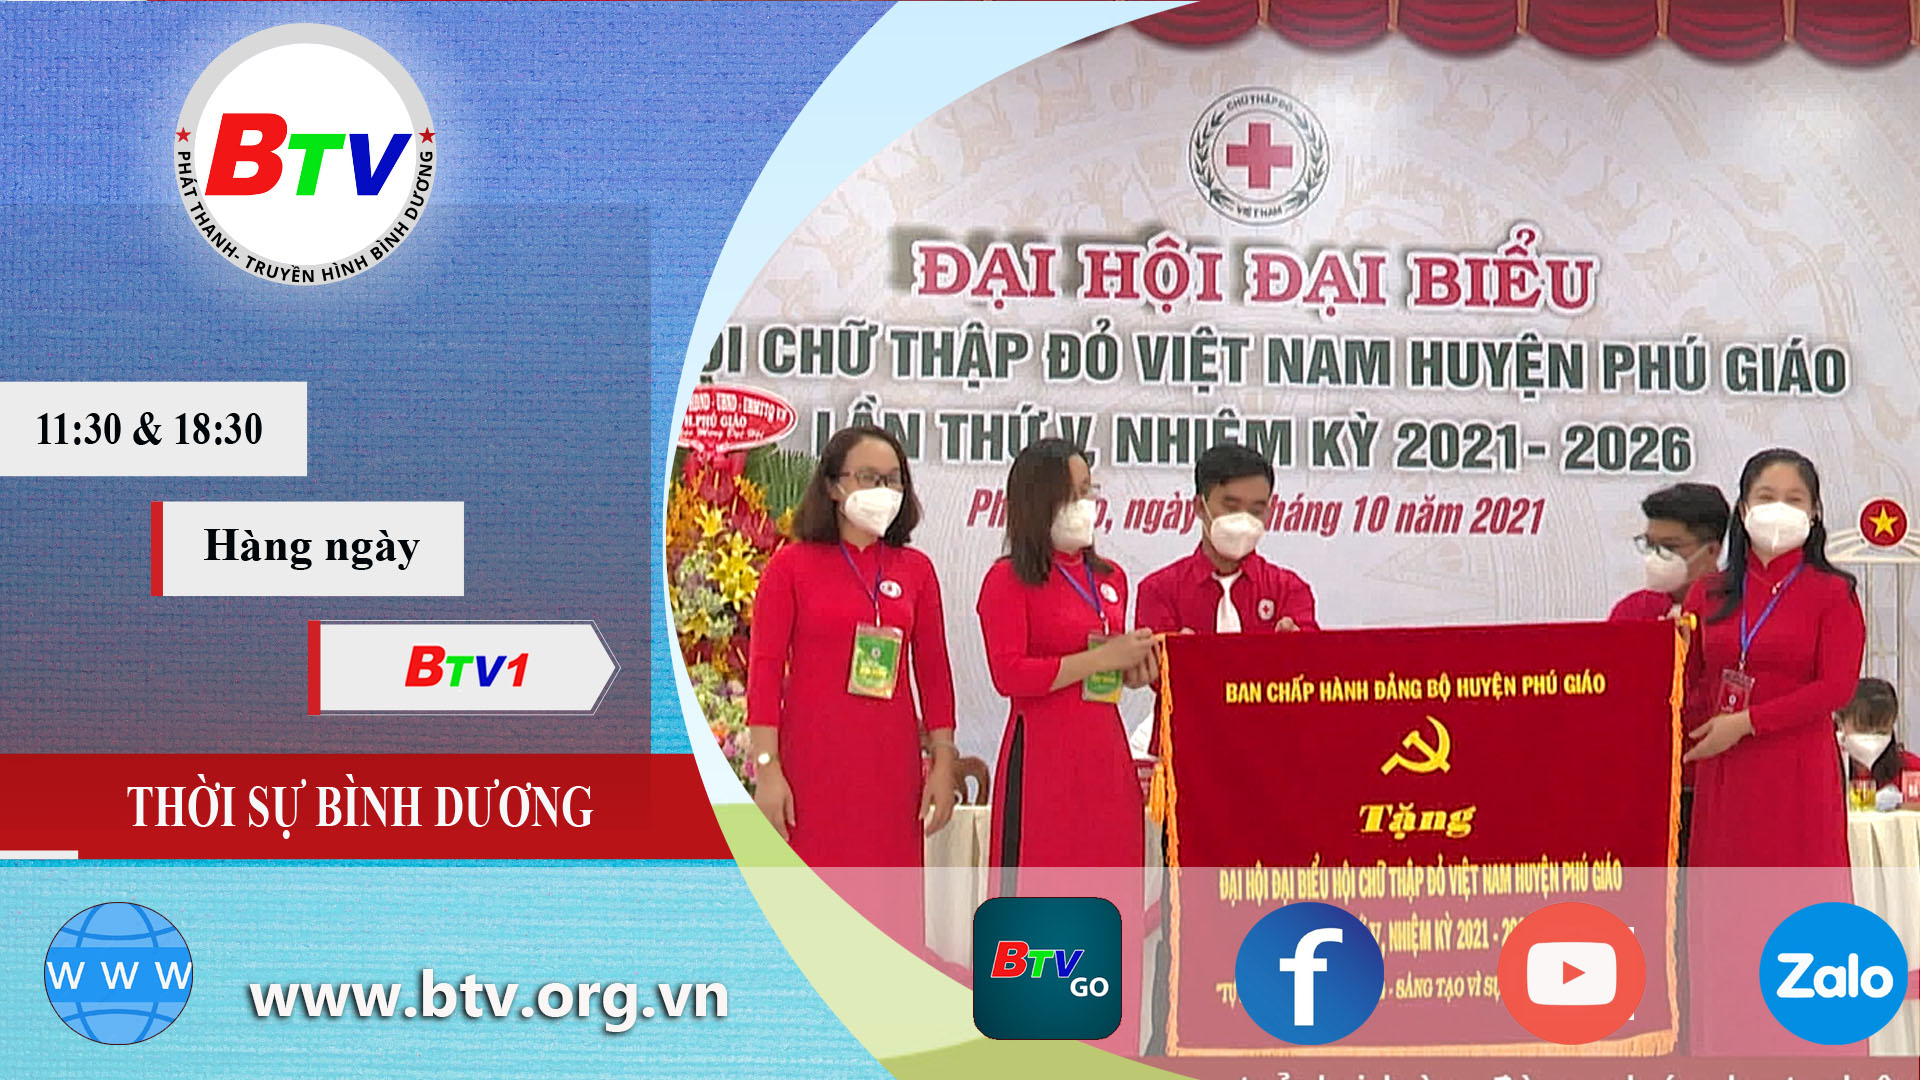 Đại hội Đại biểu Hội Chữ thập đỏ Việt Nam huyện Phú Giáo lần thứ 5, nhiệm kỳ 2021-2026